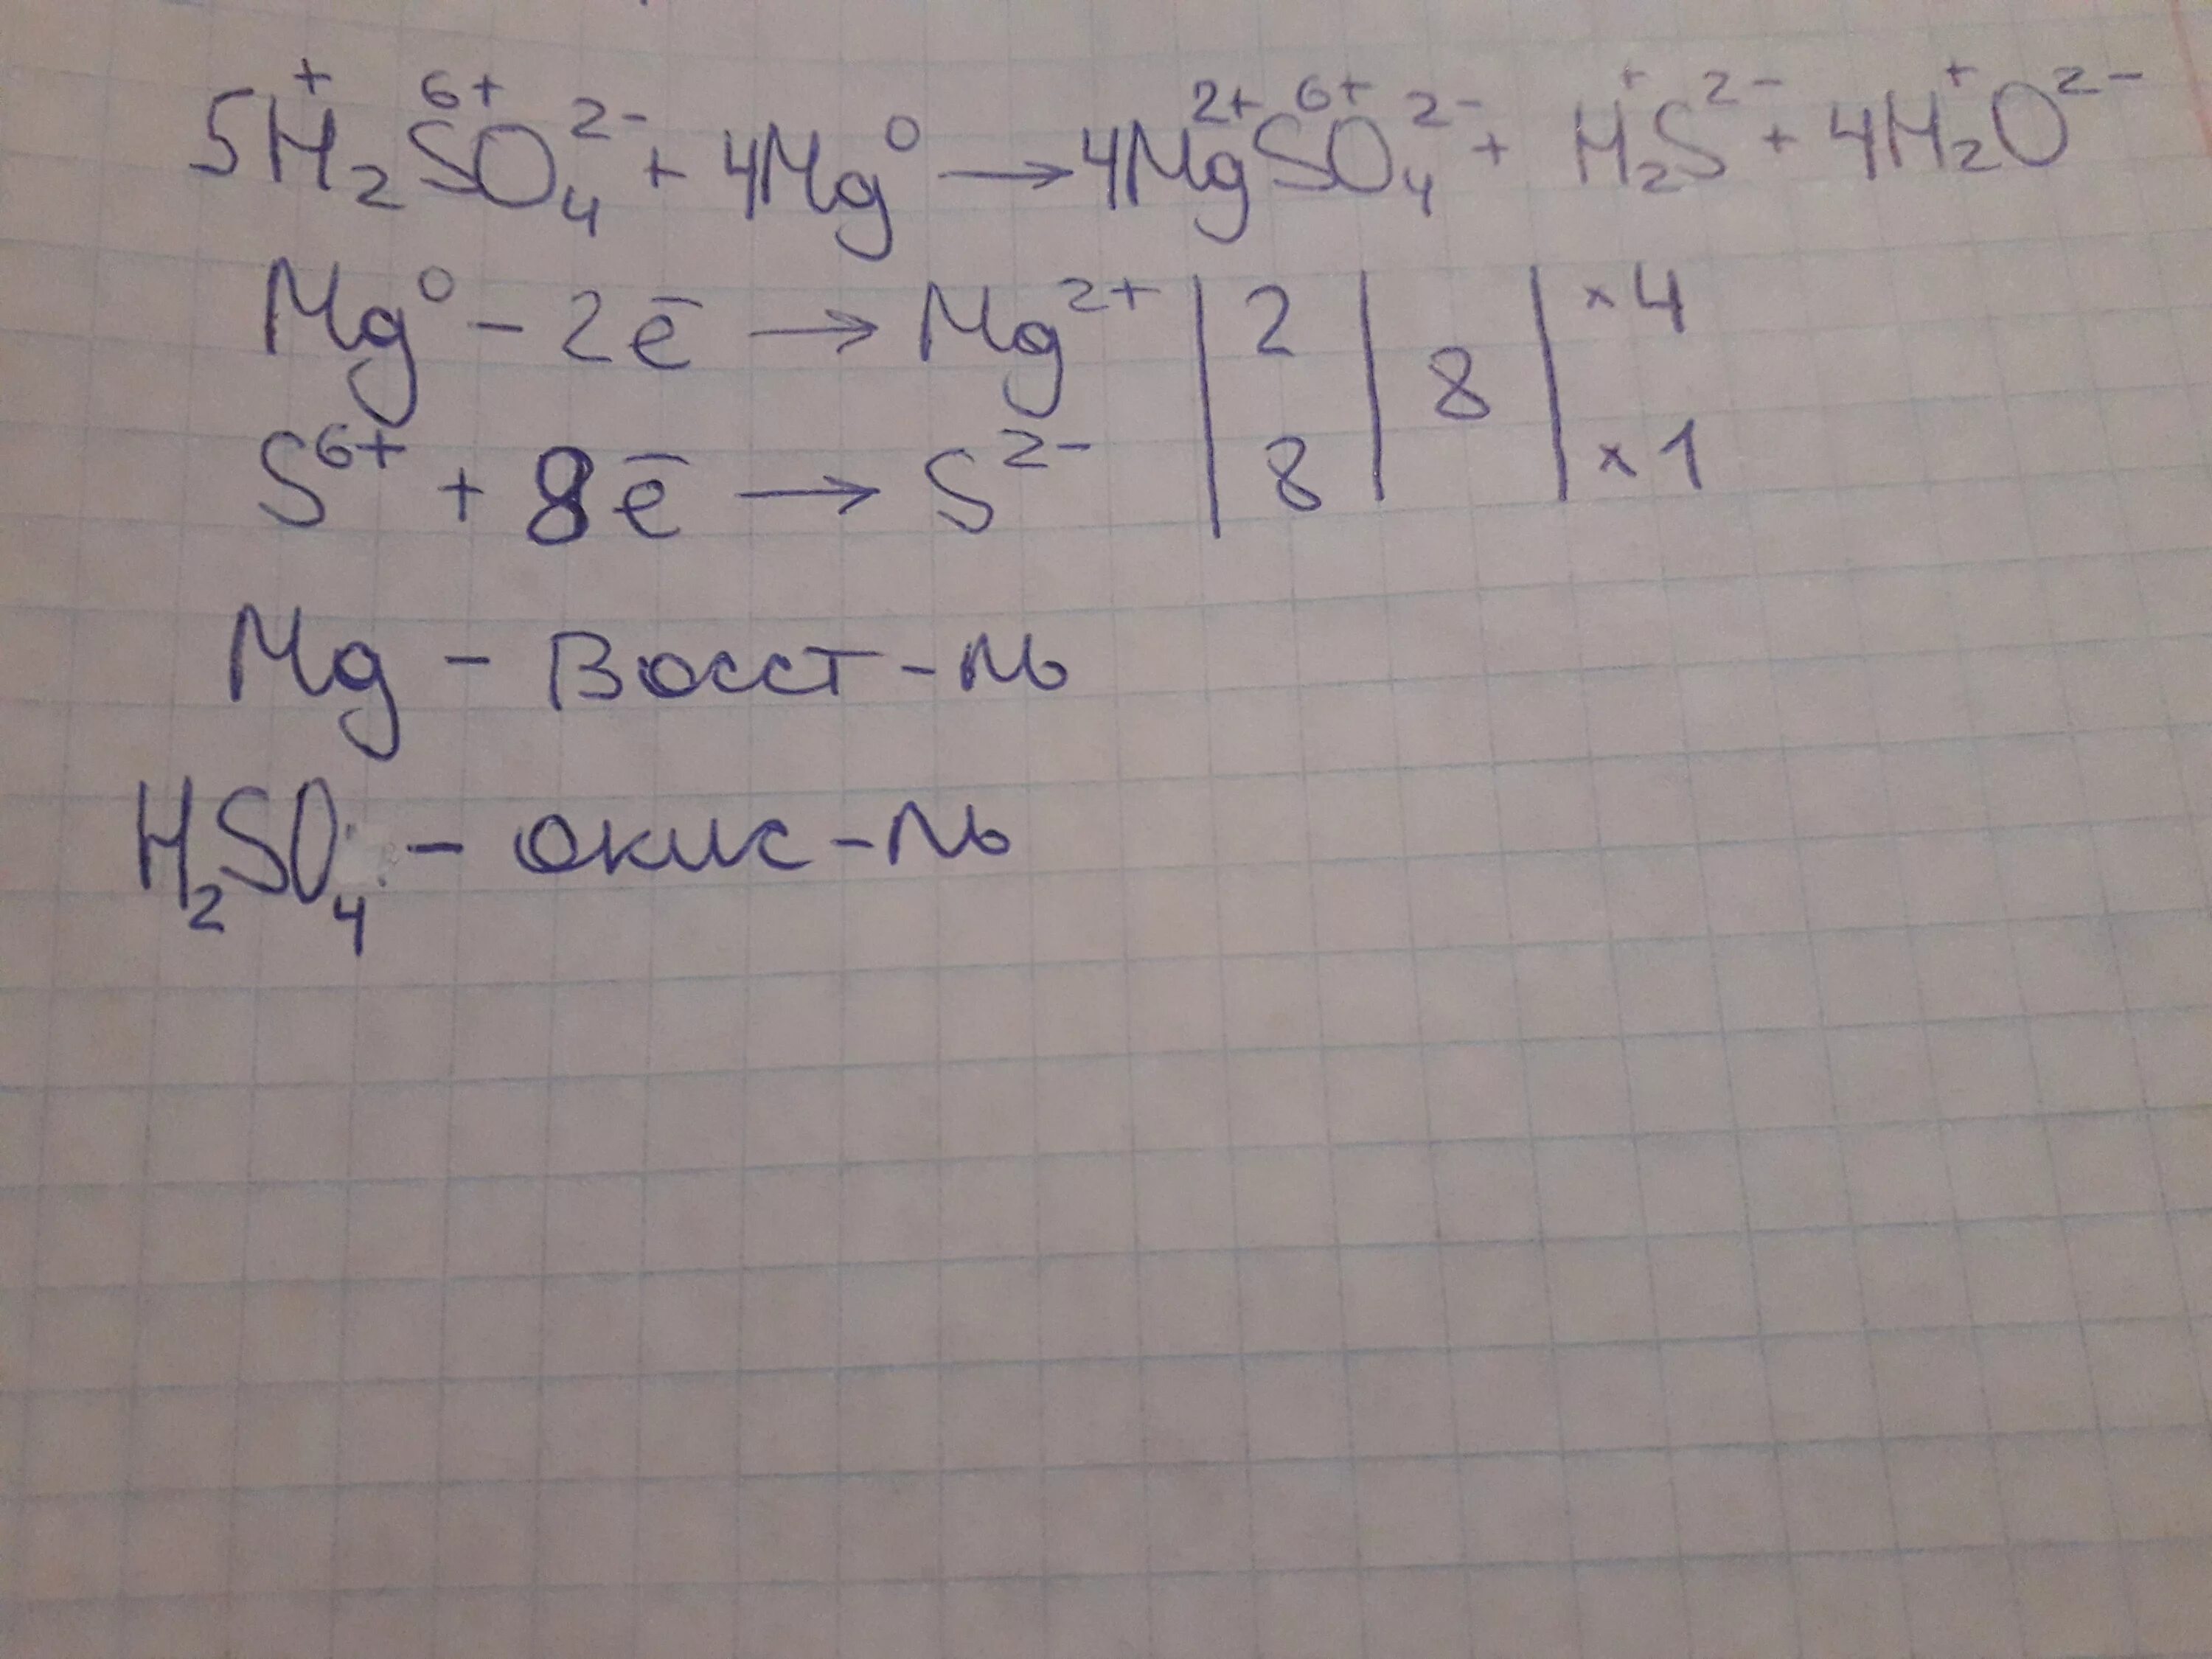 MG+h2so4 электронный баланс. MG + h2so4(к) = mgso4 + h2s + h2o баланс. Н2so4 +MG. MG h2so4 уравнение электронный баланс. Mg h2so4 признак реакции